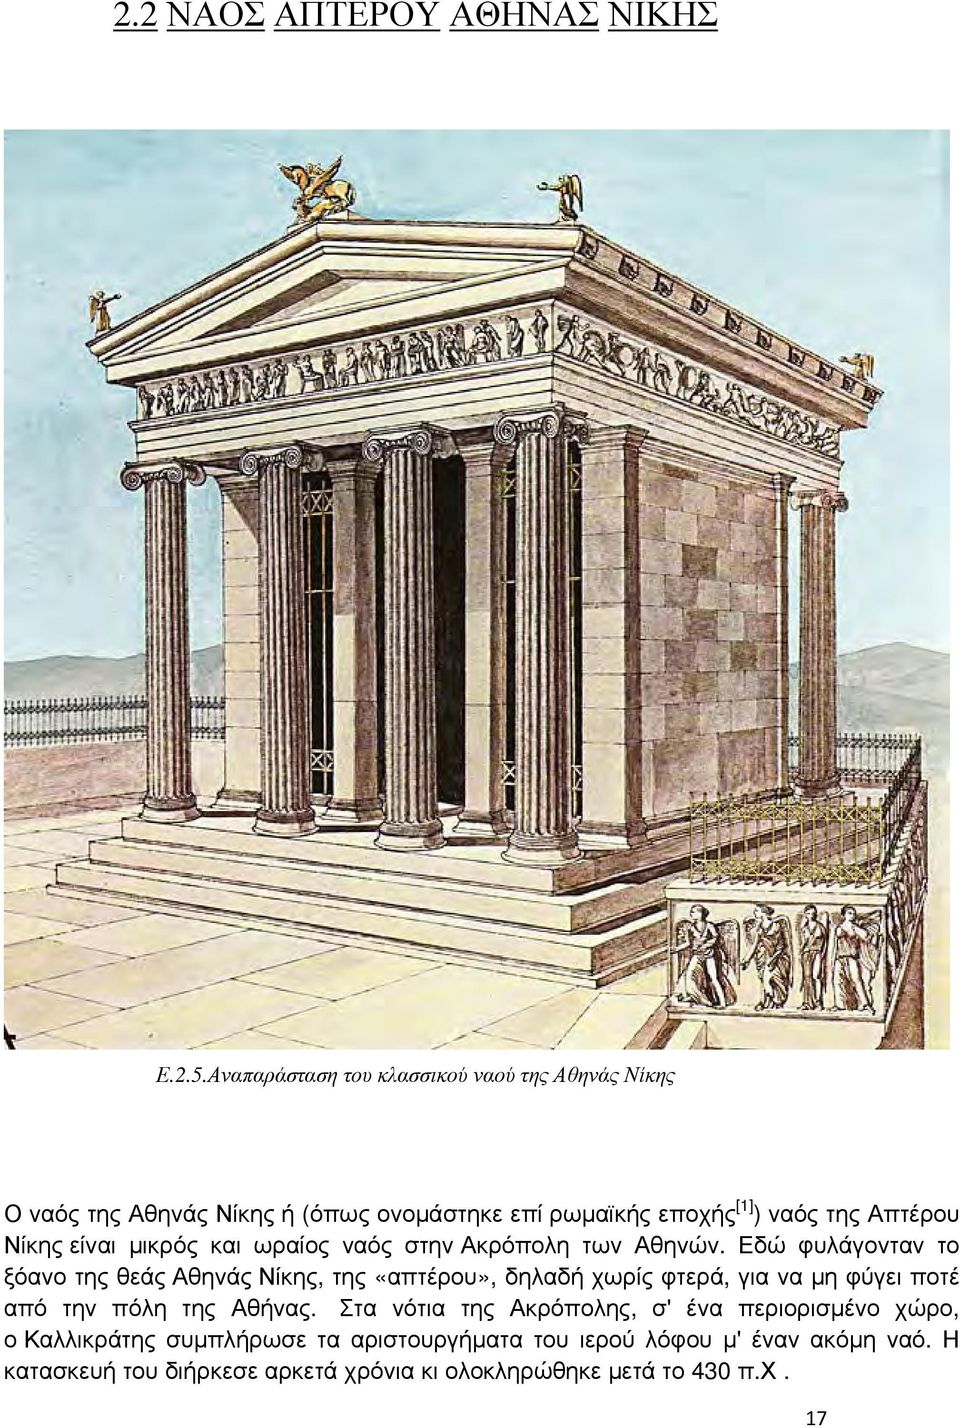 είναι μικρός και ωραίος ναός στην Ακρόπολη των Αθηνών.